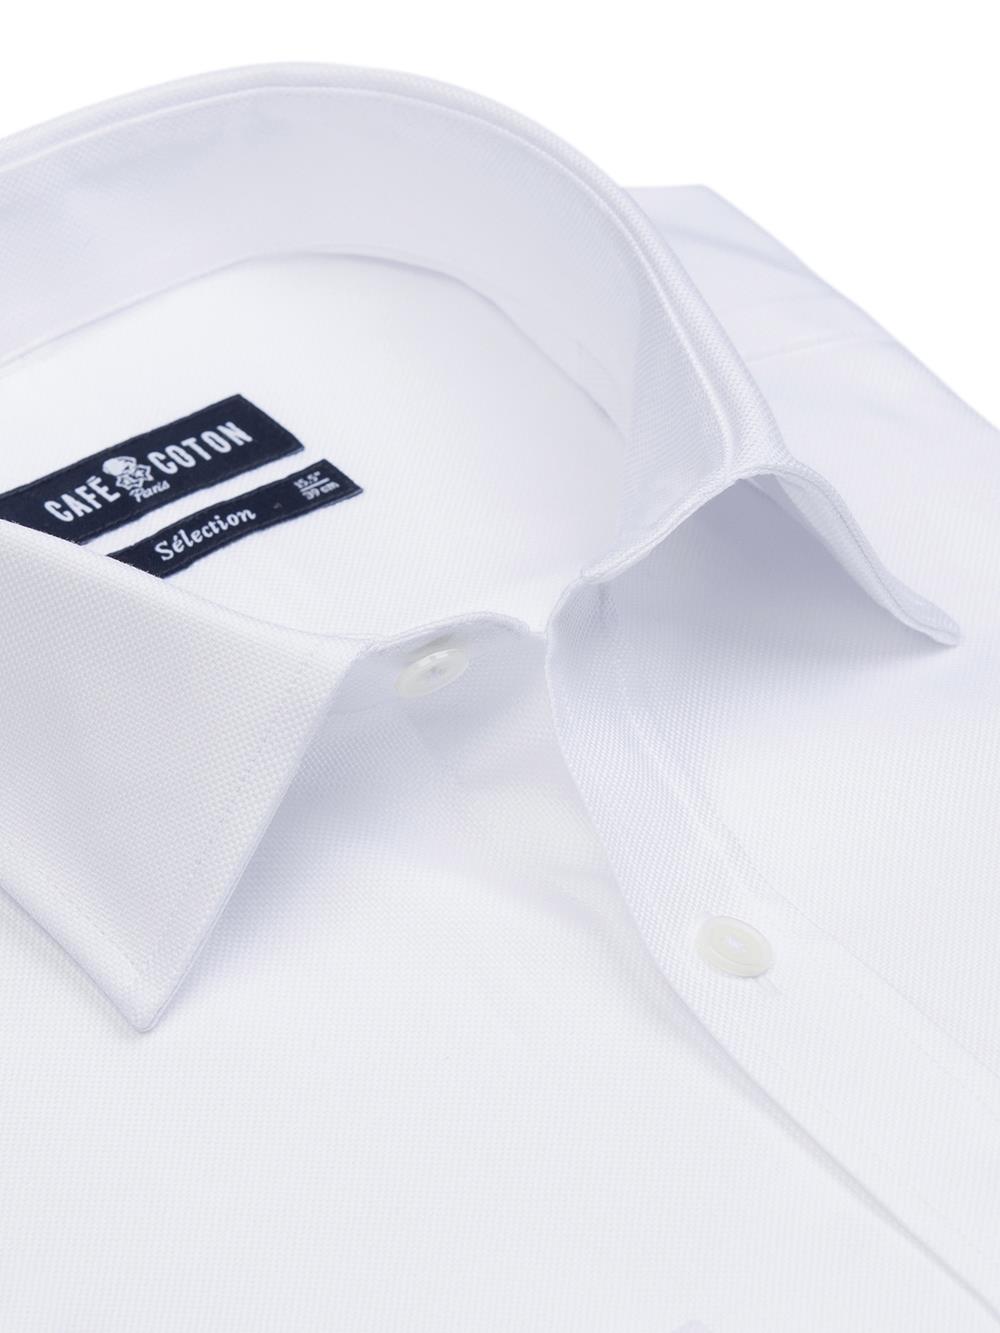 Camicia oxford bianca reale